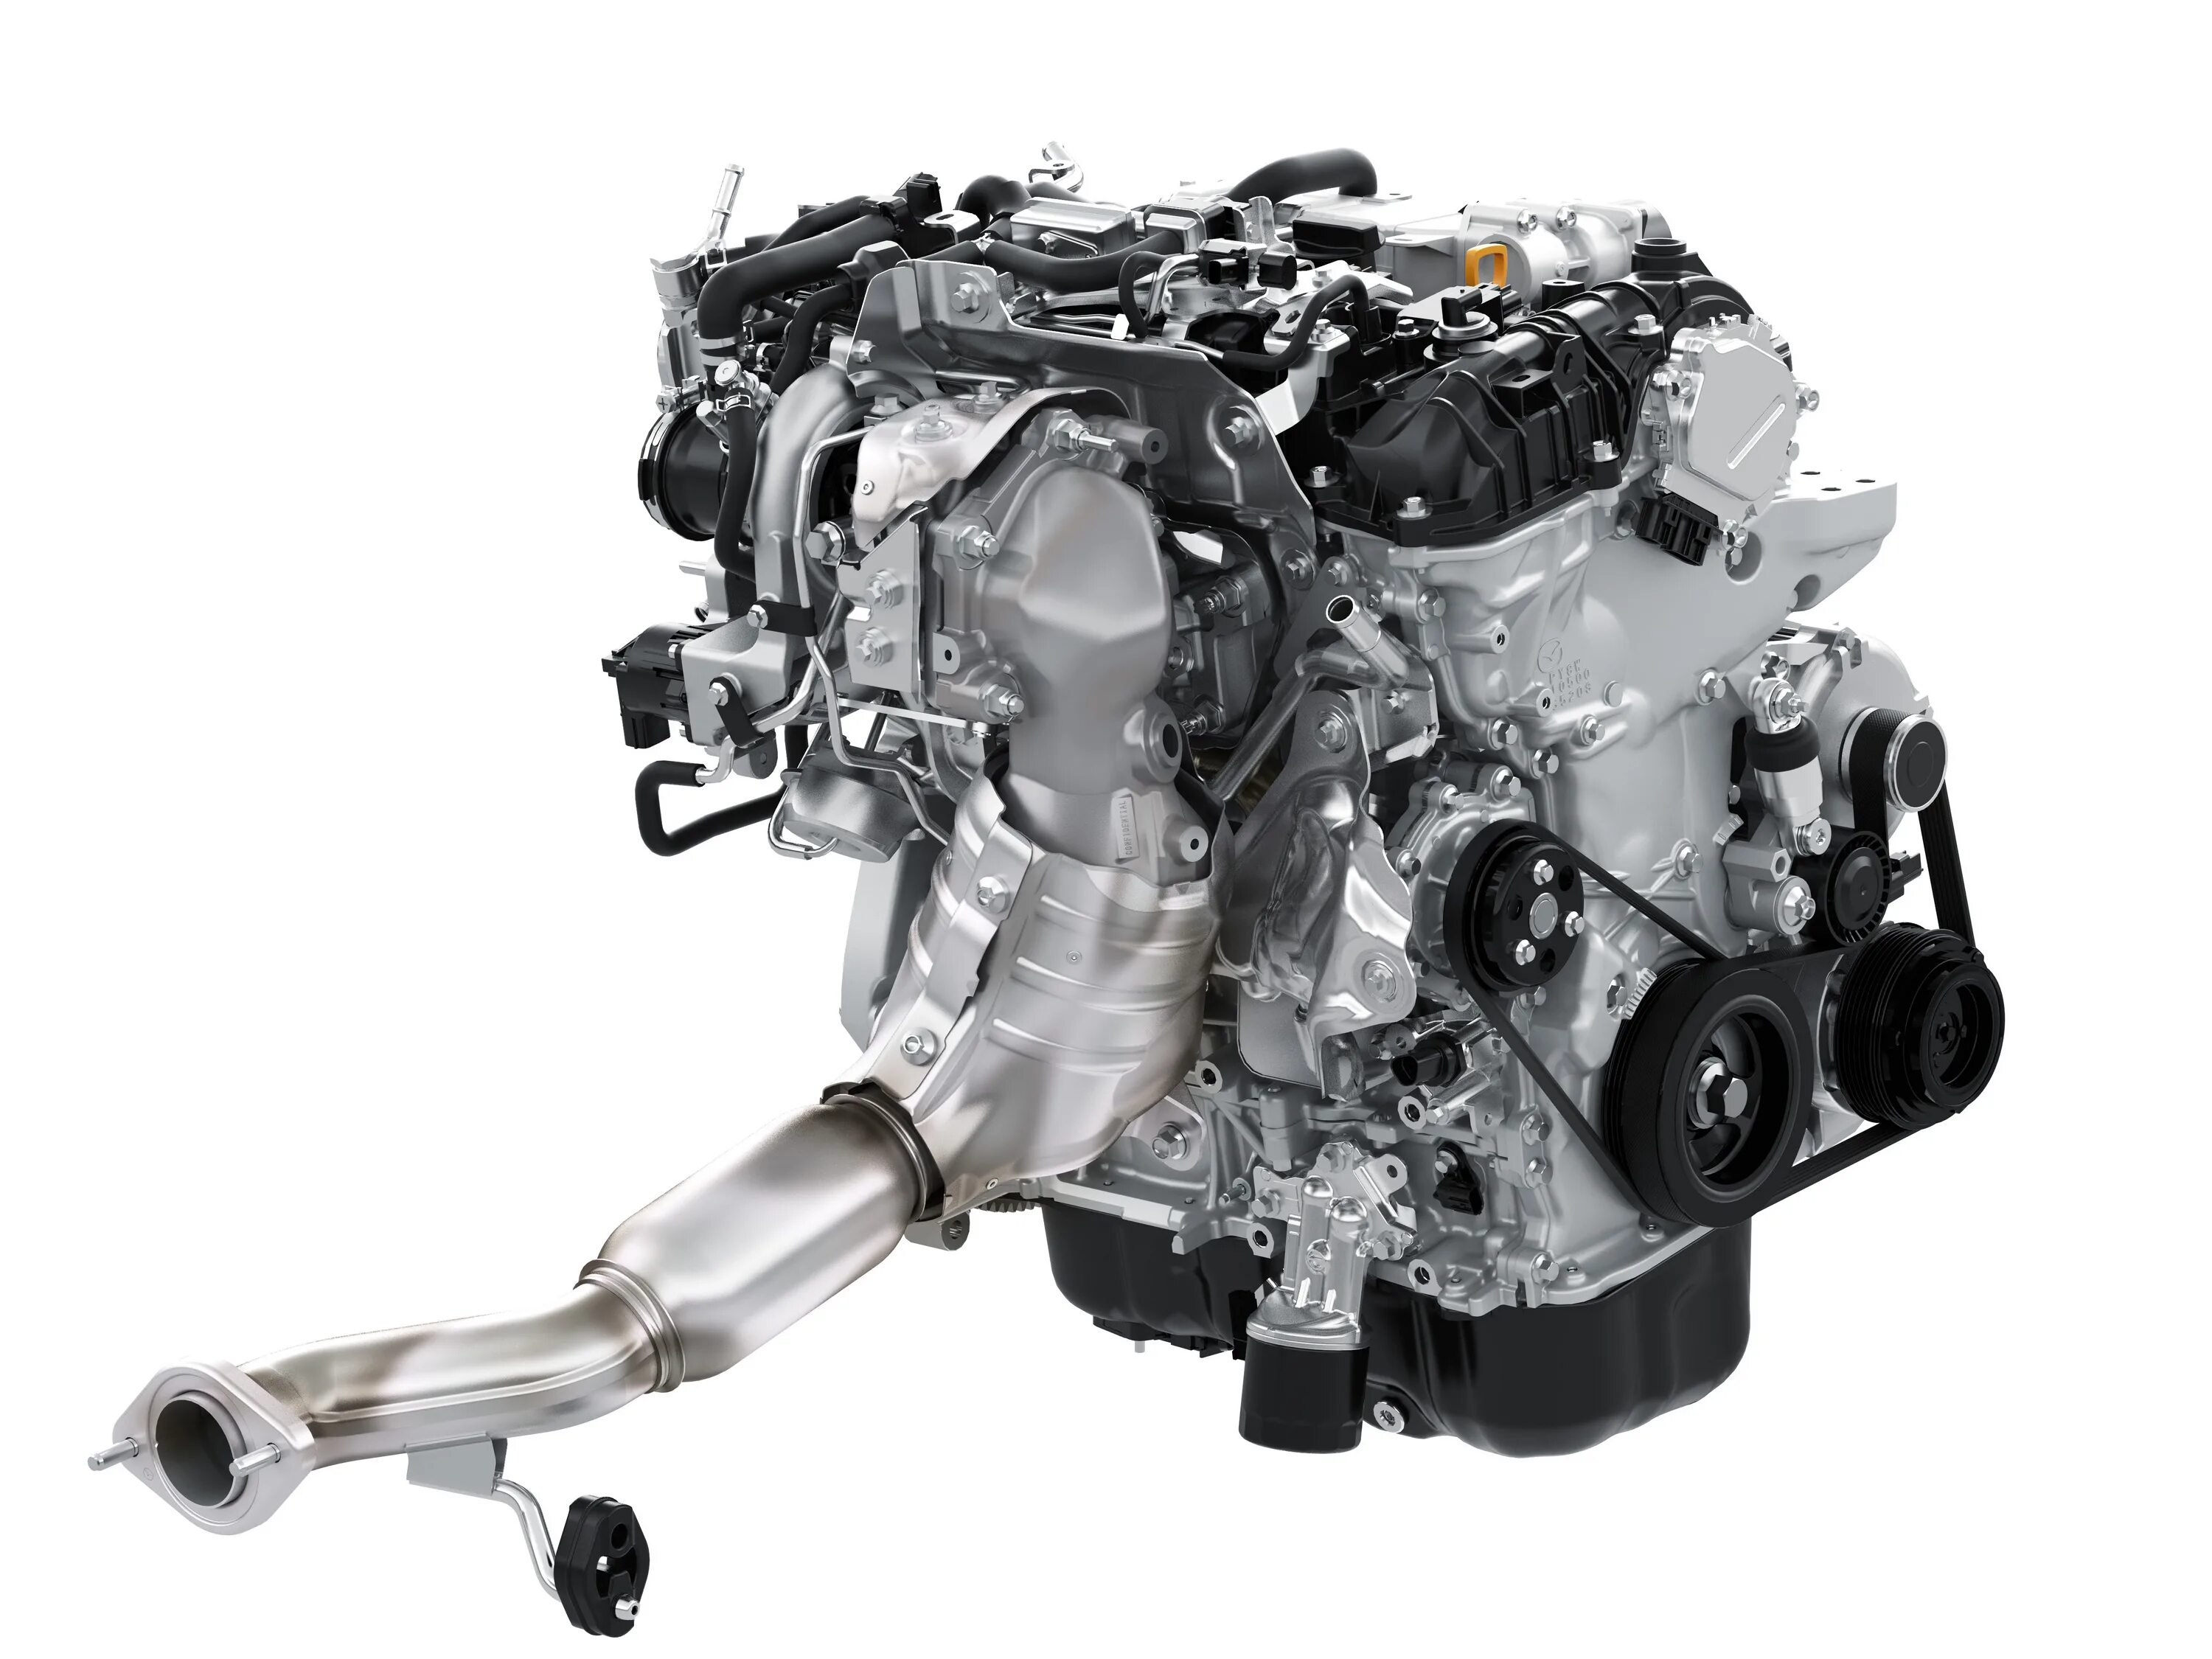 Двигатель мазда сх5 2.0. Двигатель Мазда cx5 2.5. Двигатель Мазда СХ 9 2.5 турбо. Мазда CX 5 2.0 двигатель. Двигатель Mazda CX-5 2.0 SKYACTIV.